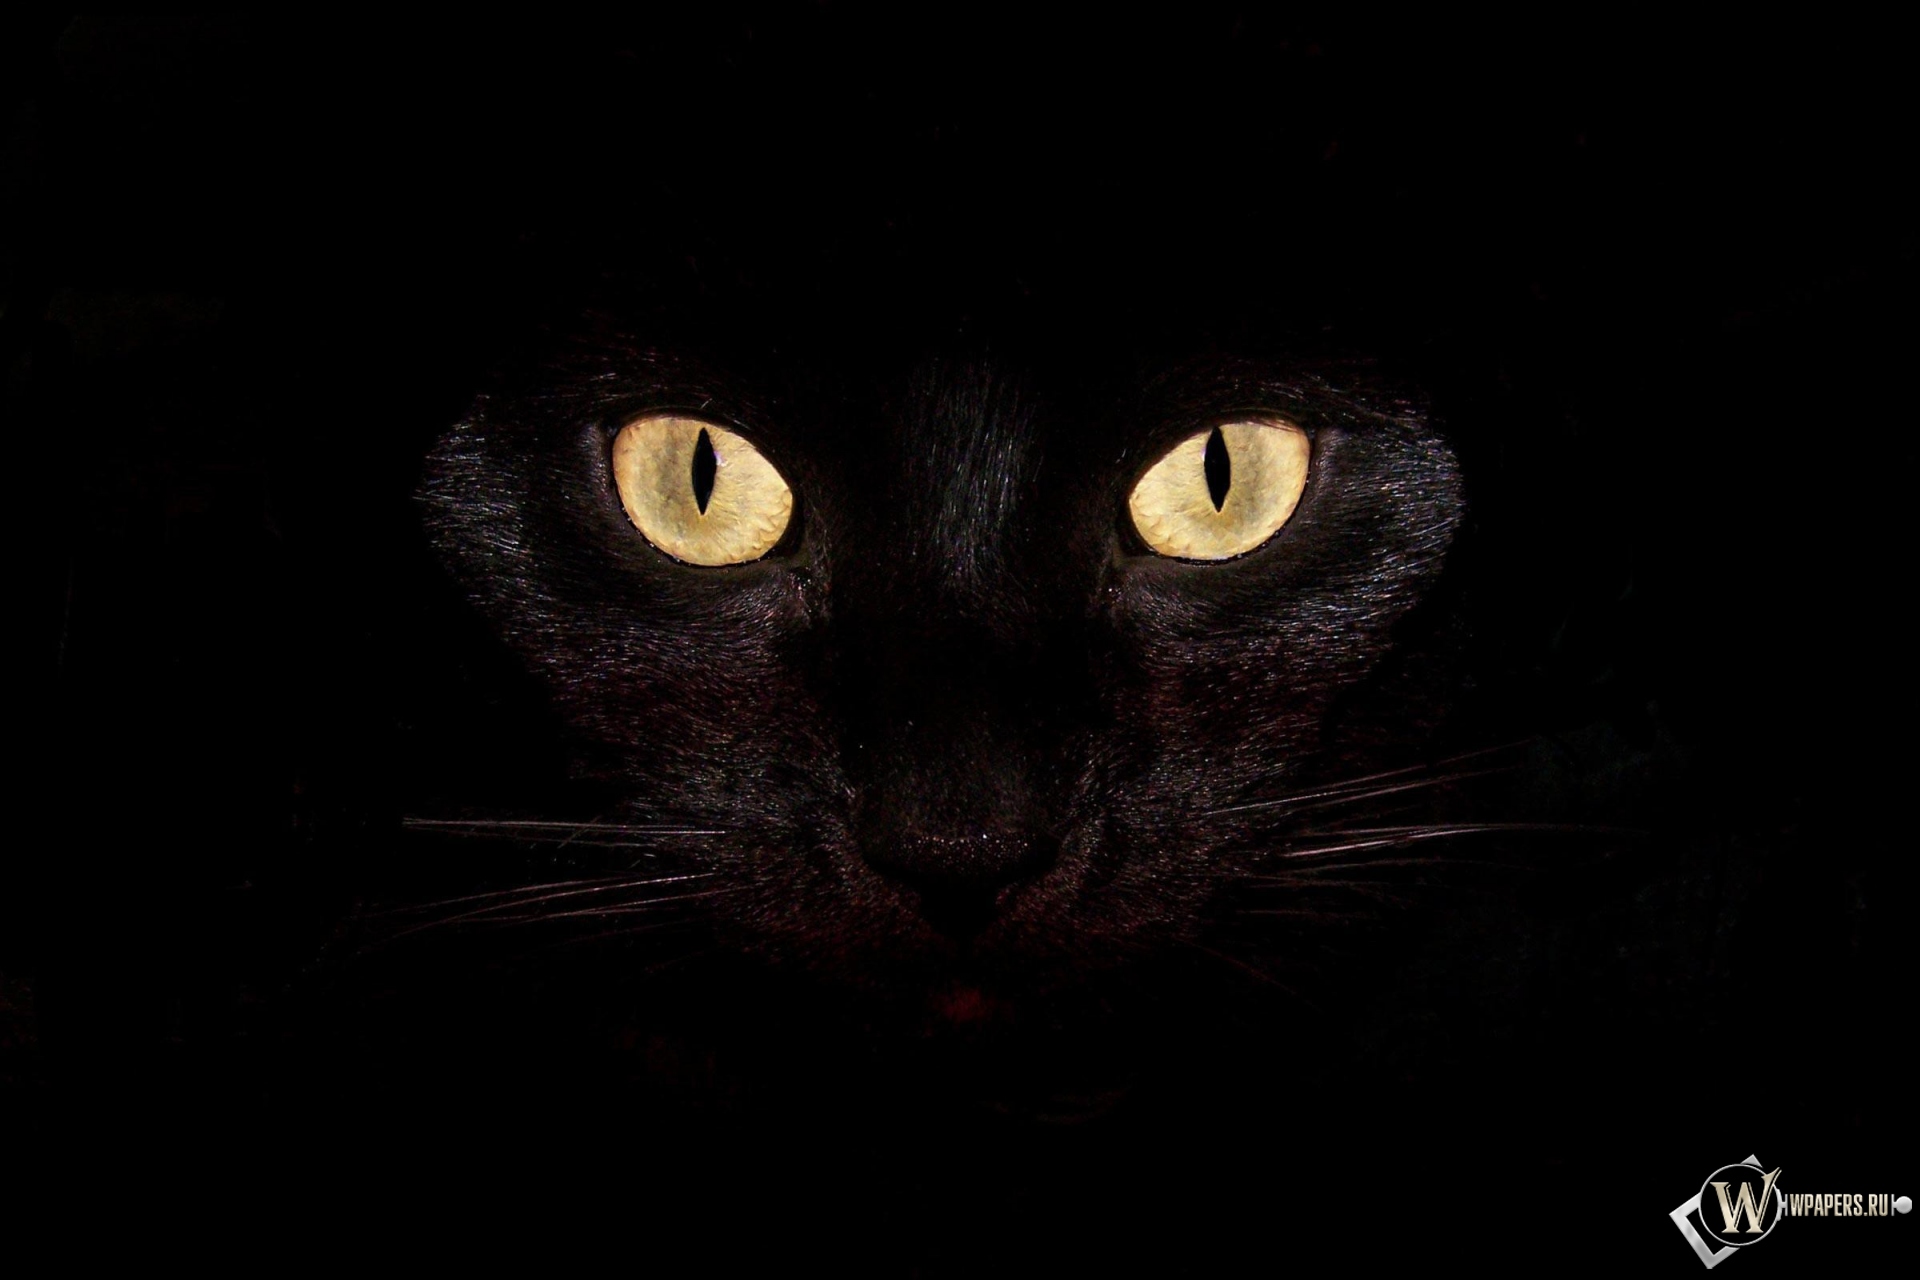 Черная кошка на чернофм фоне 1920x1280